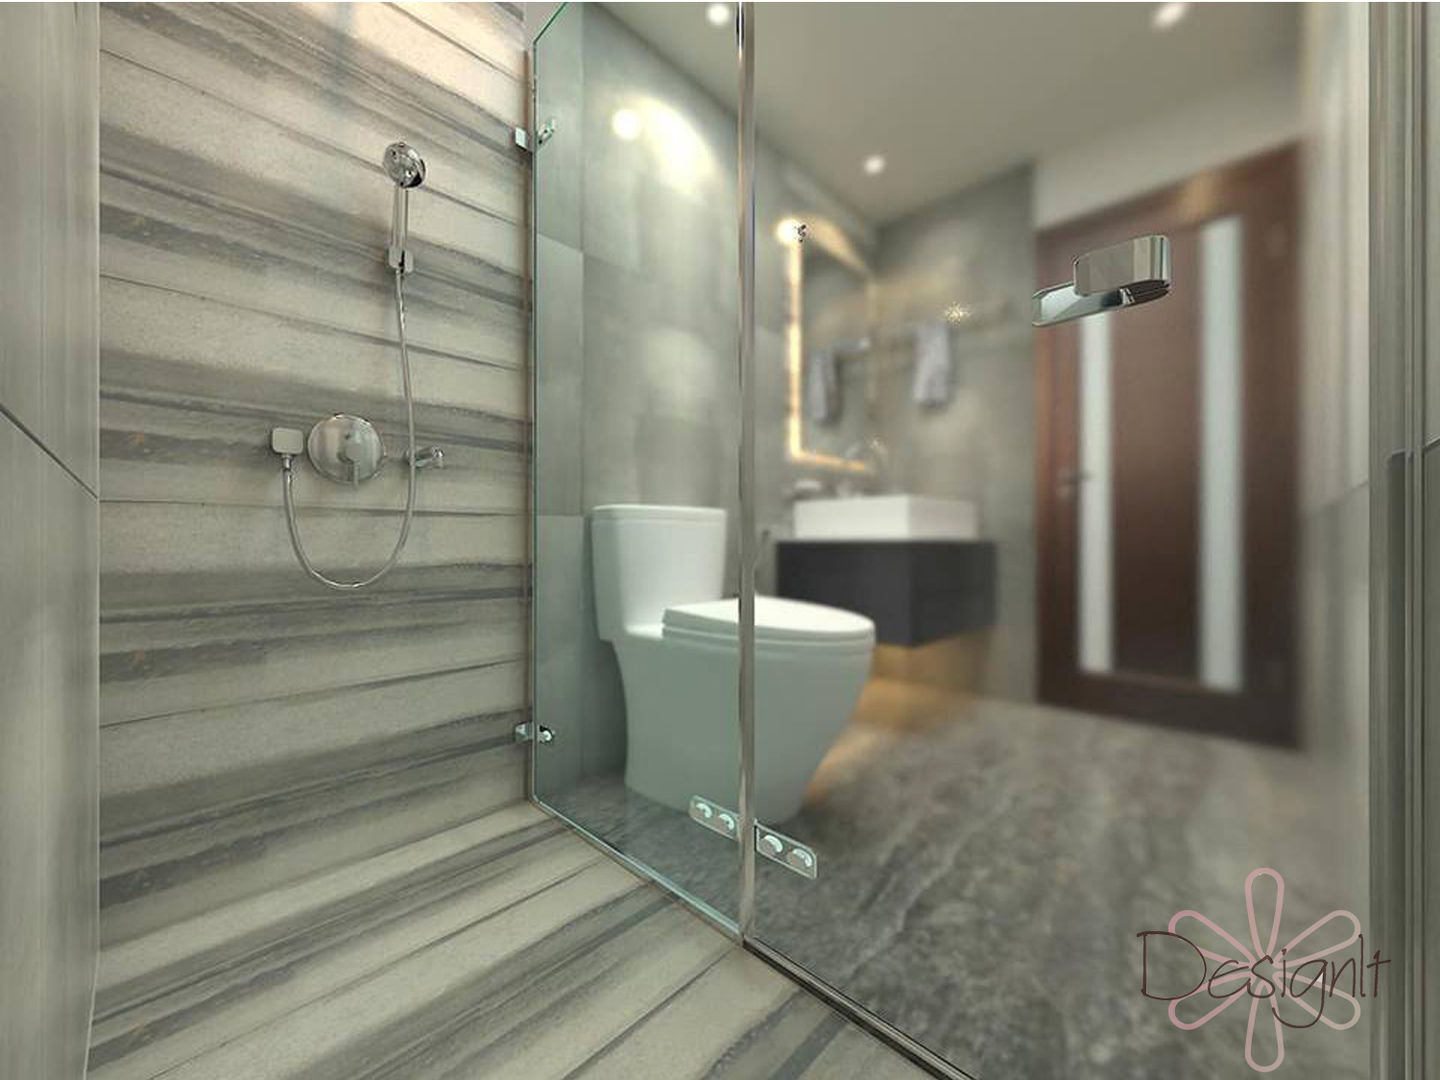 Bathroom, DESIGNIT DESIGNIT Ванная комната в стиле модерн Плитка